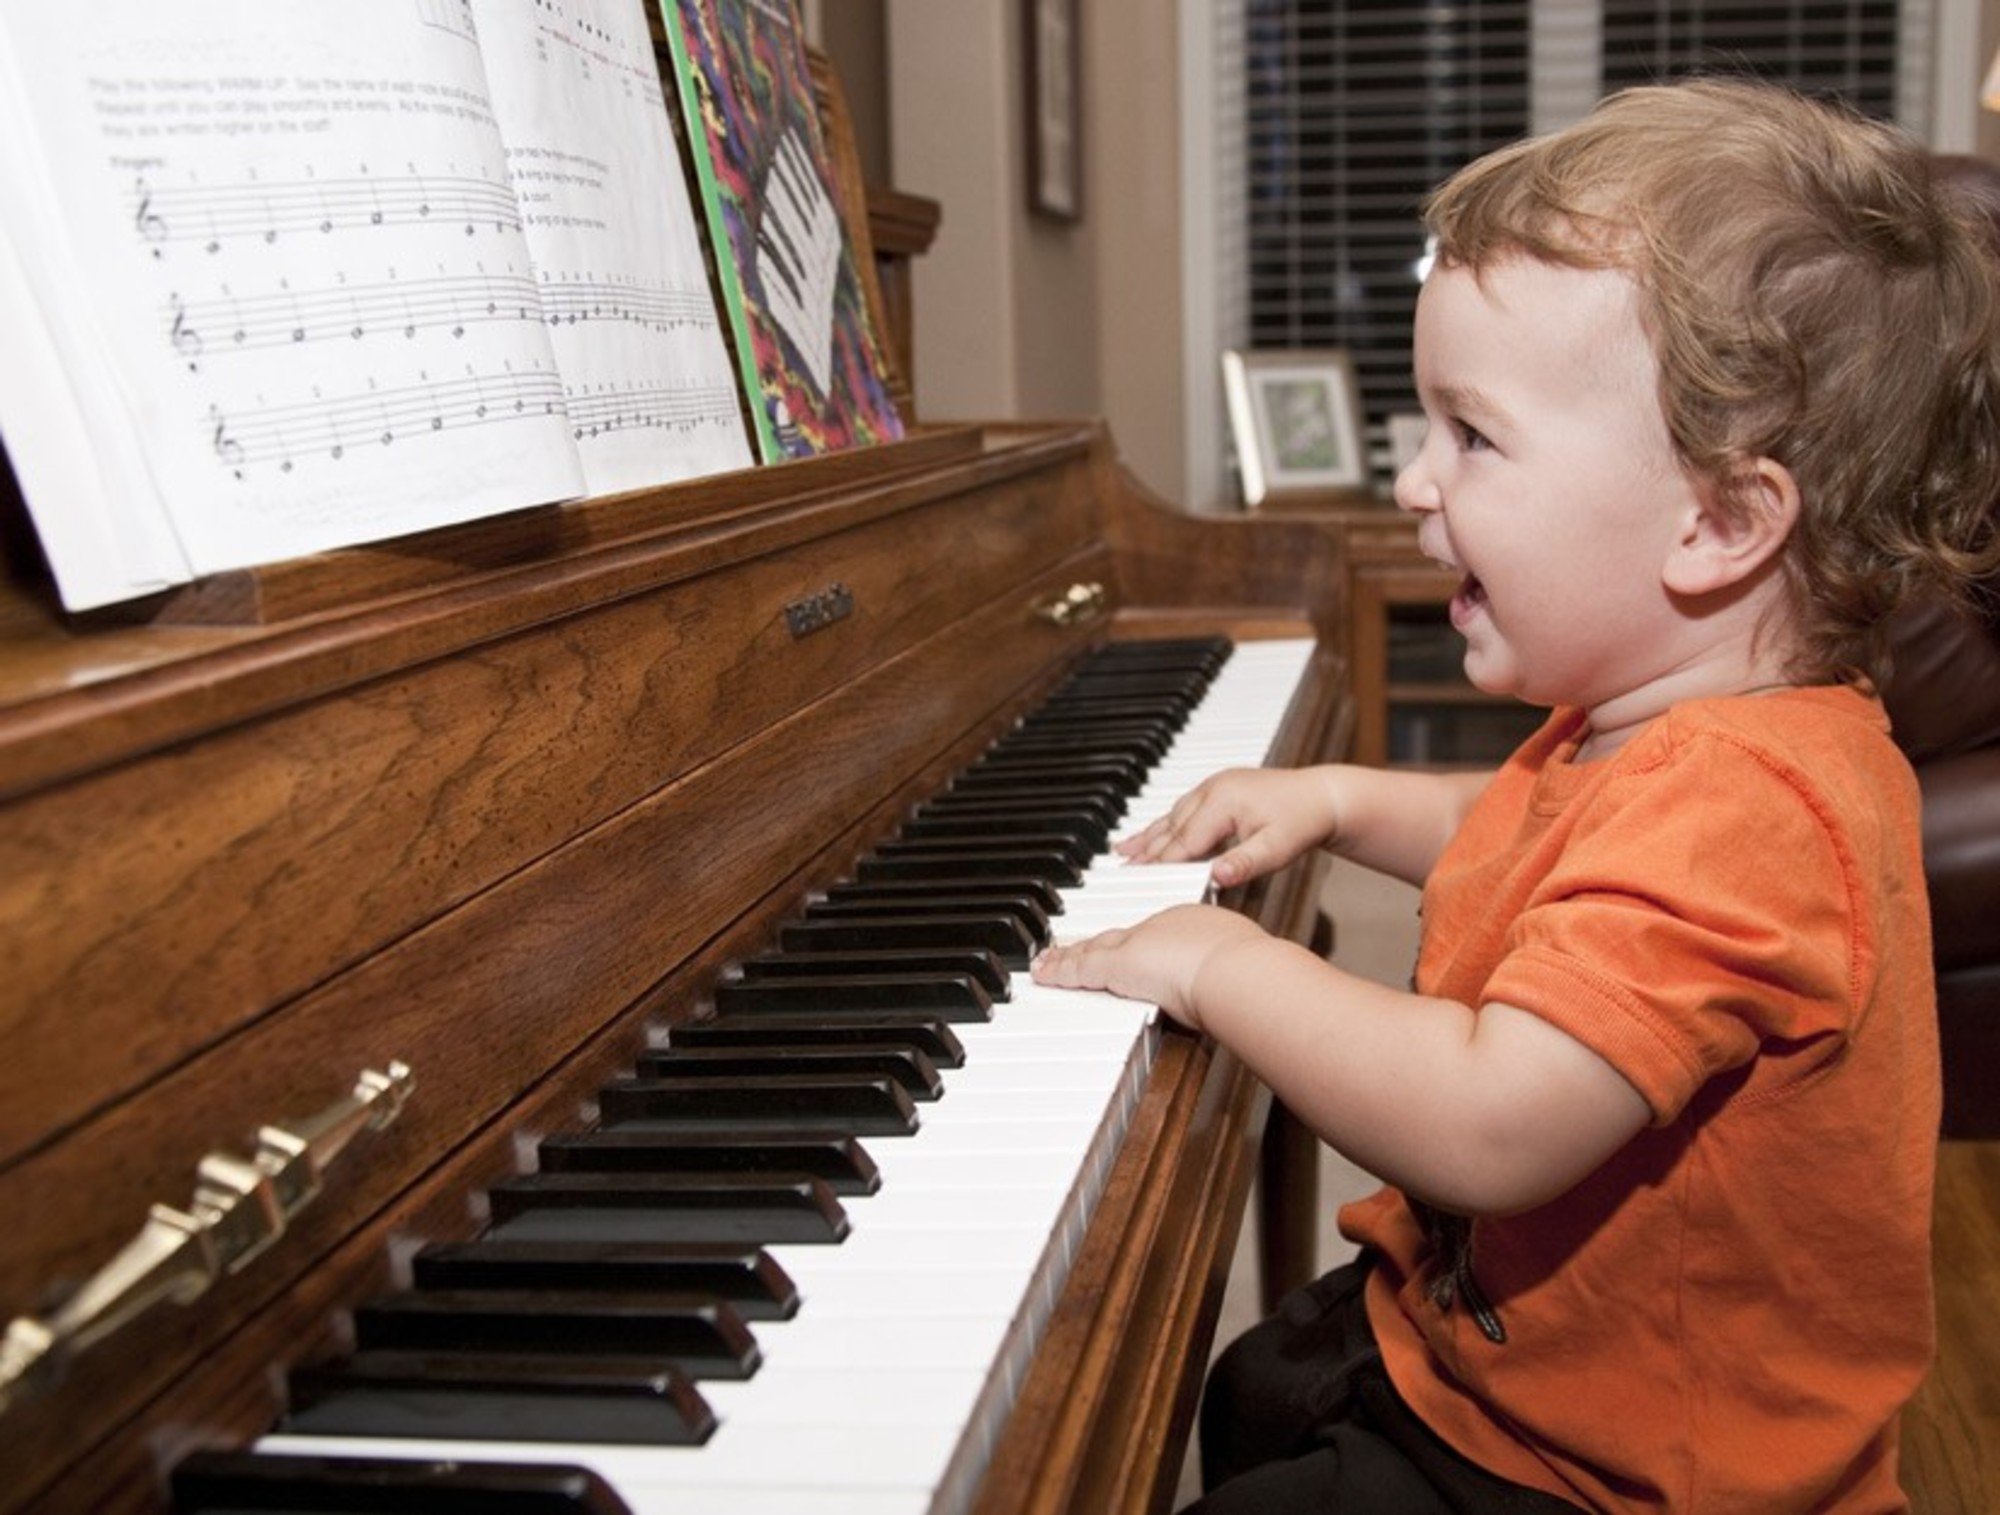 Уроки фортепиано в музыкальной школе. Пианино для детей. Игра на музыкальных инструментах. Музыкальные инструменты для детей. Фортепиано для детей.